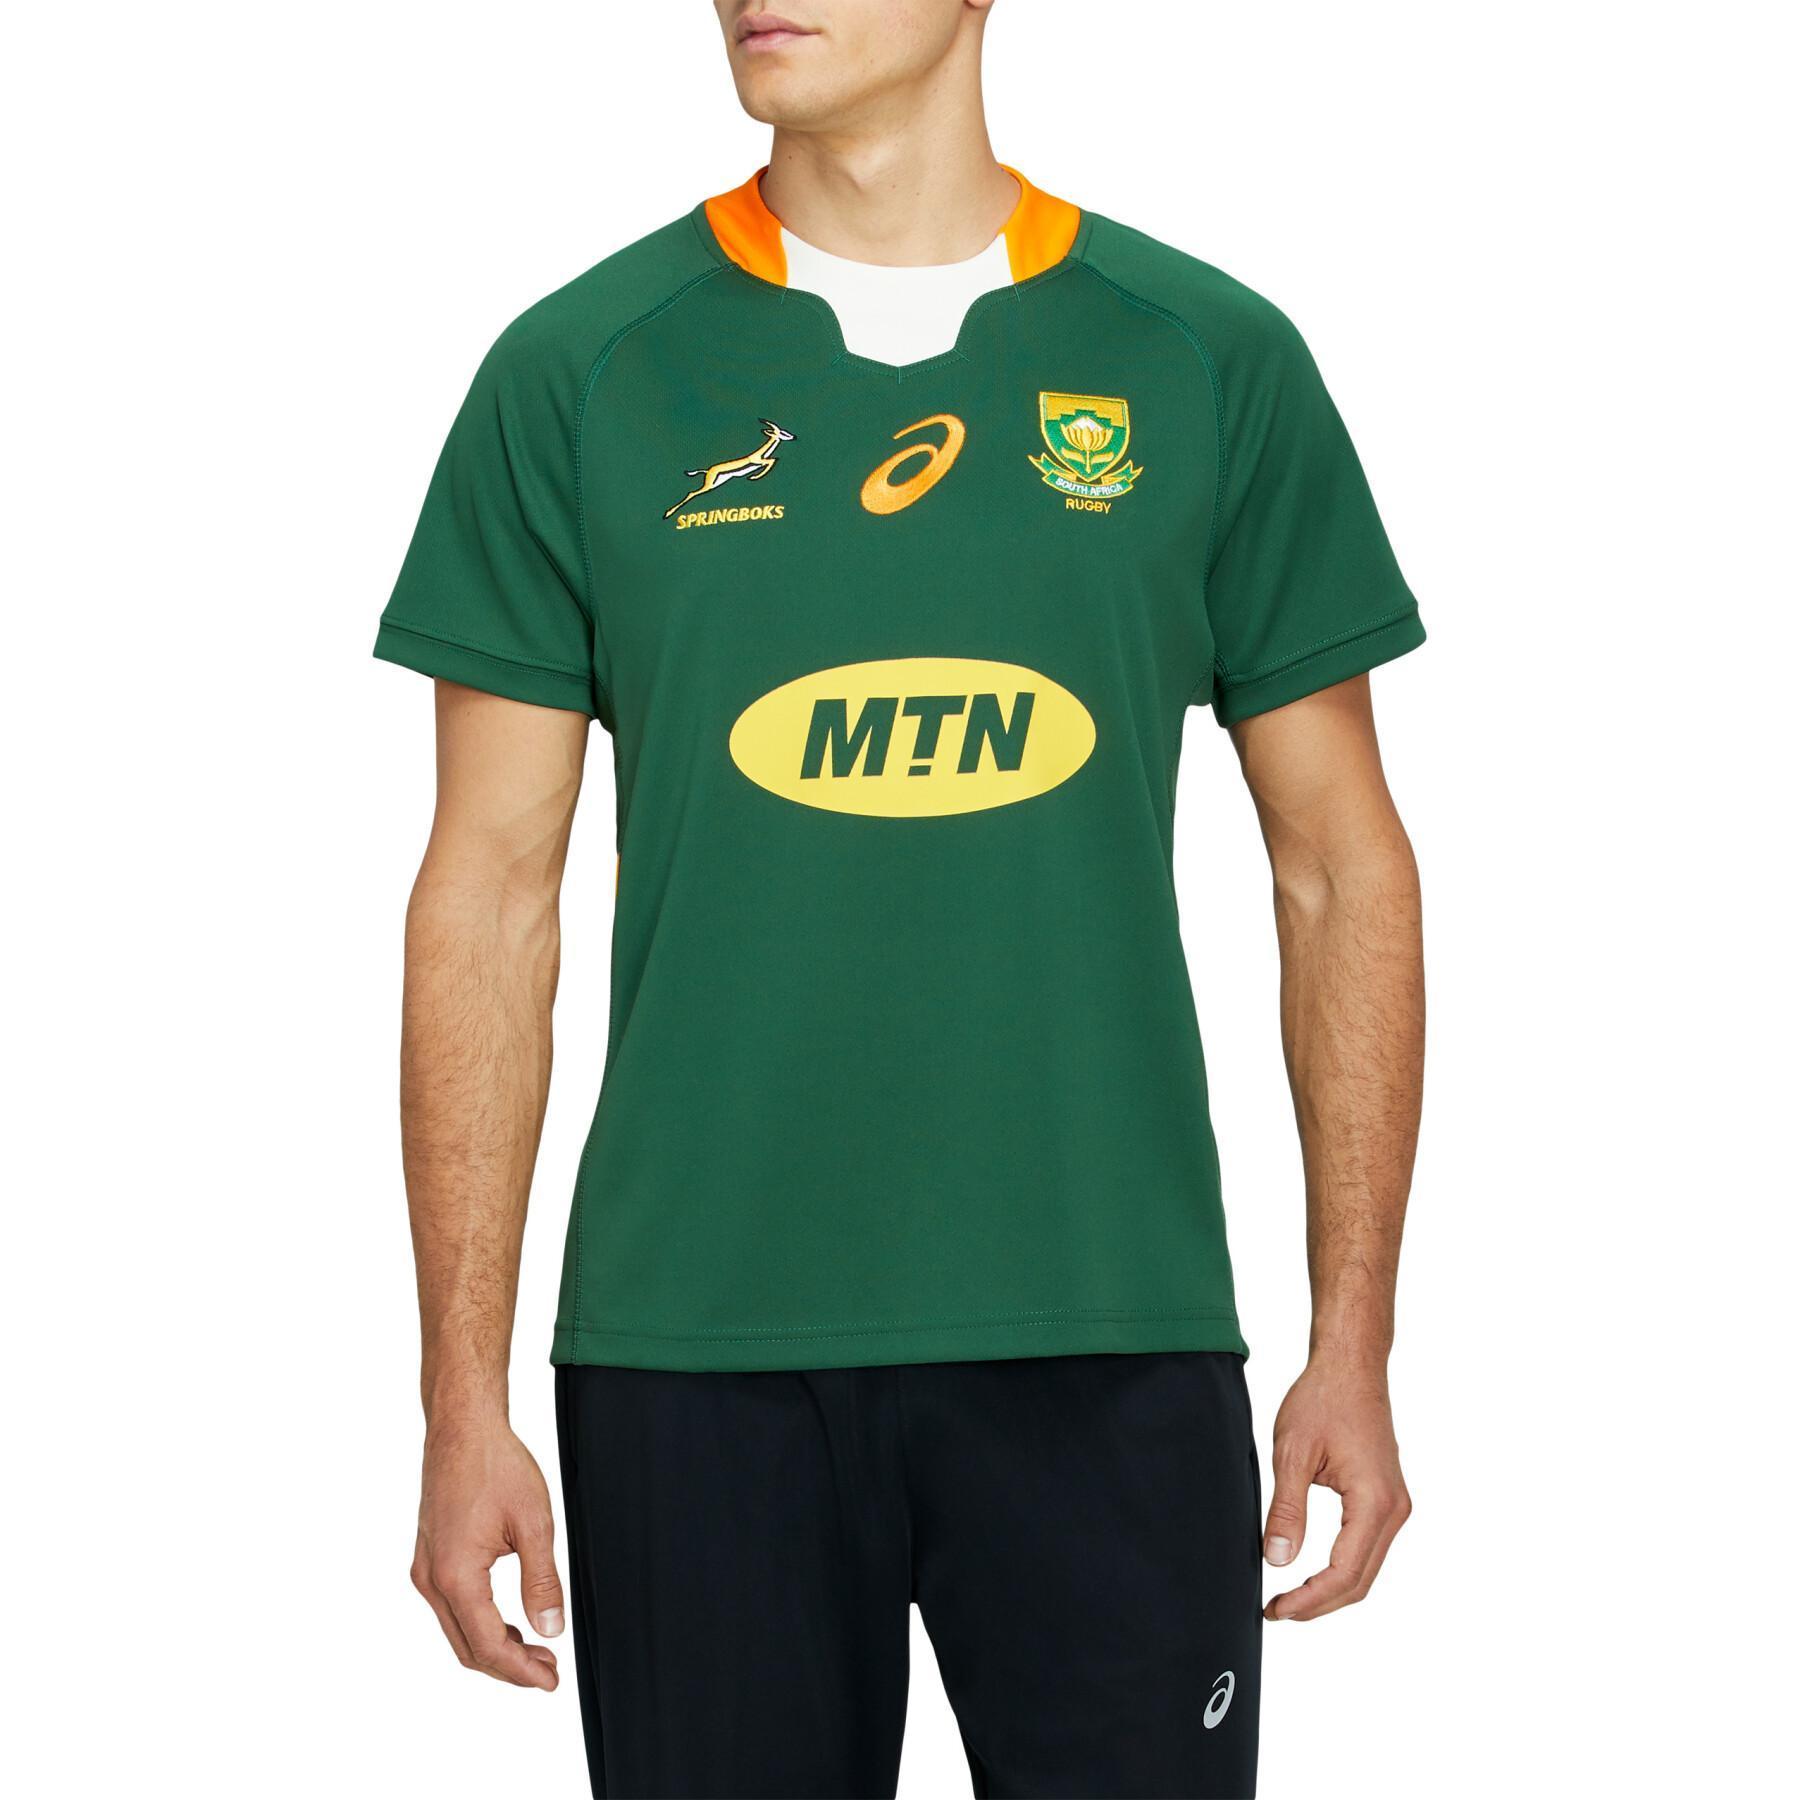 Camiseta de exterior de los Springboks de Sudáfrica